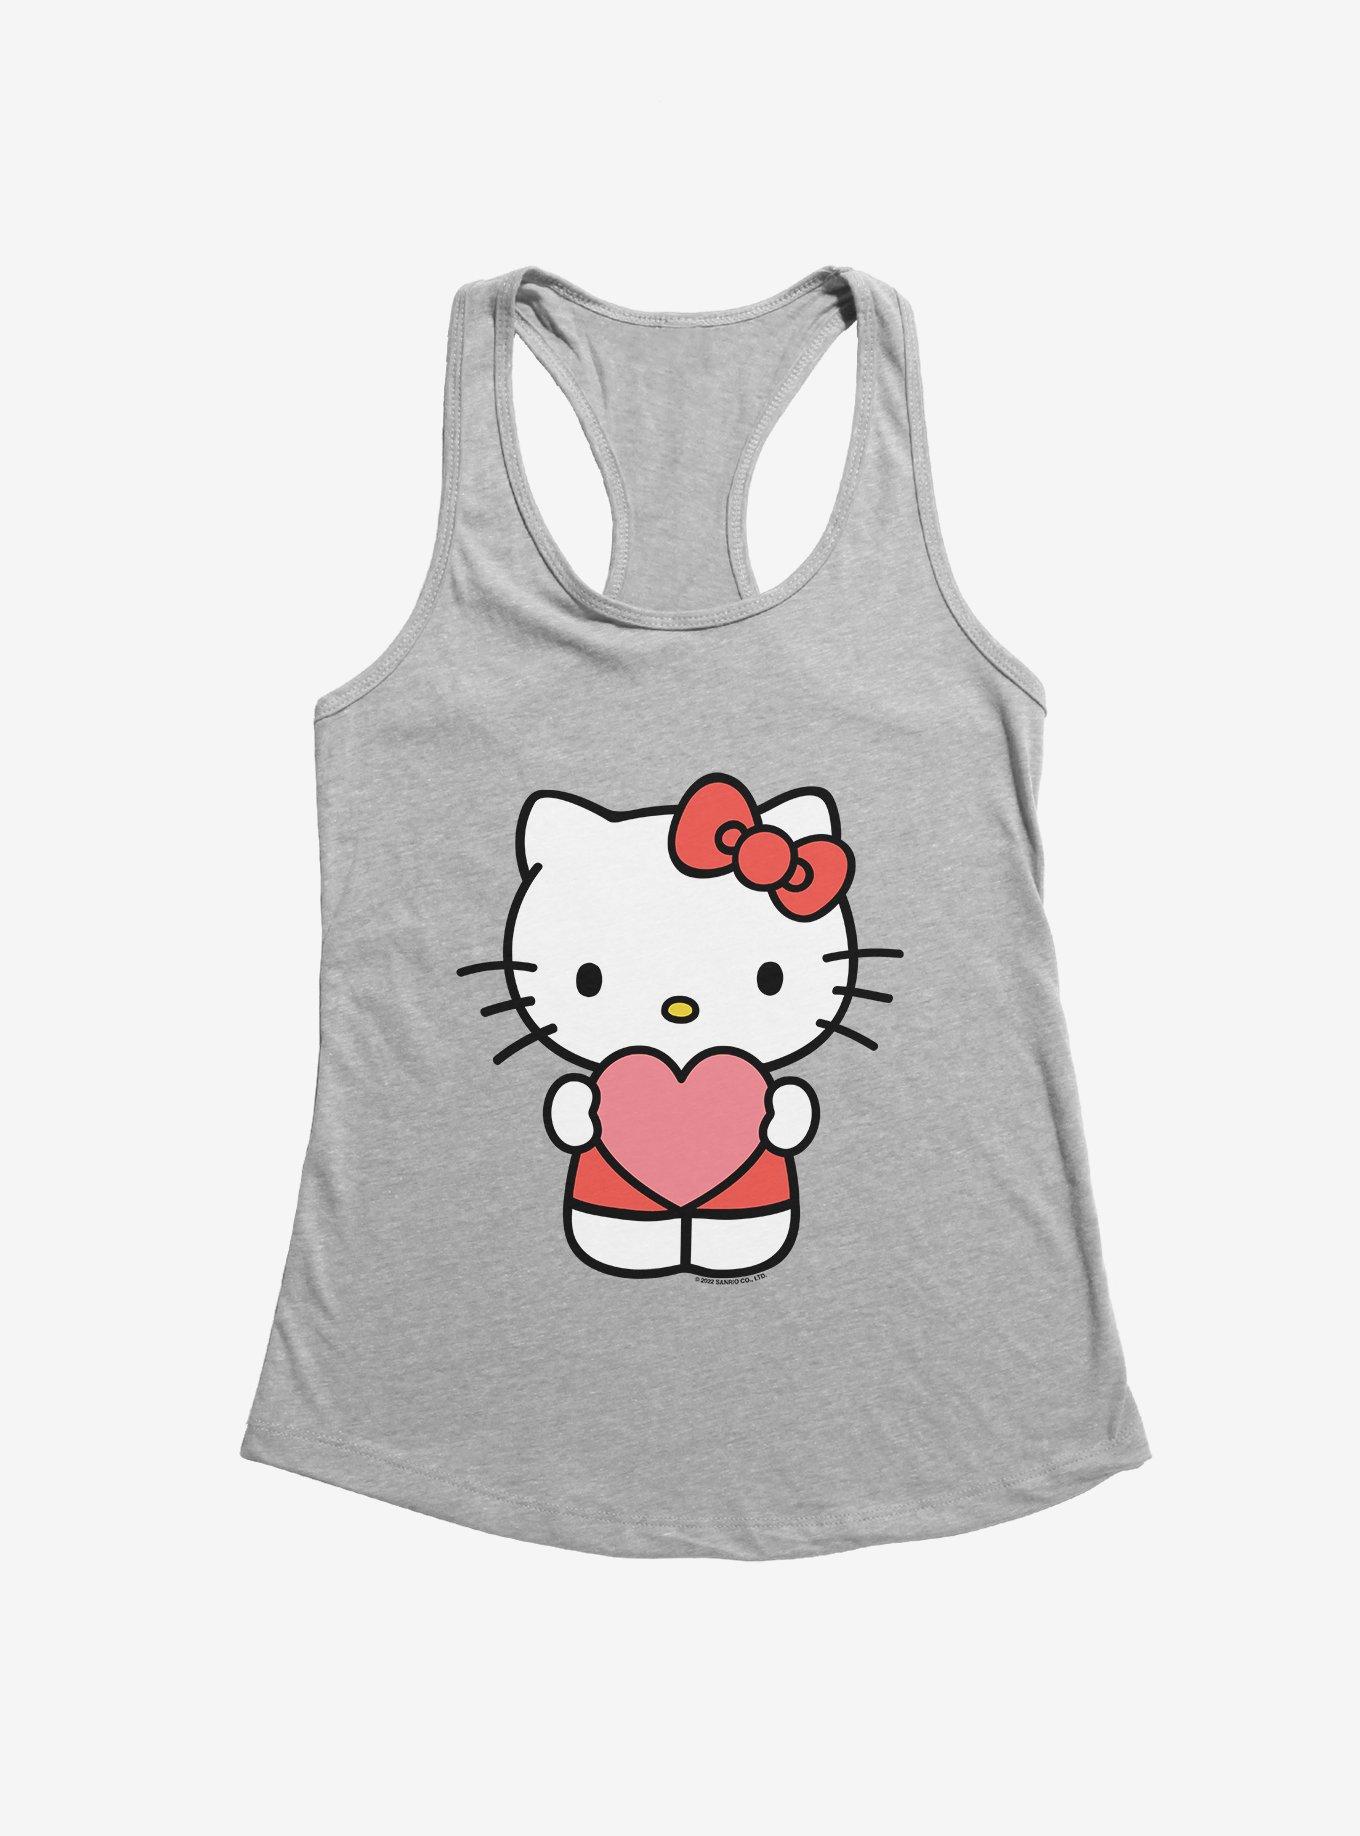 Hello Kitty Heart Girls Tank